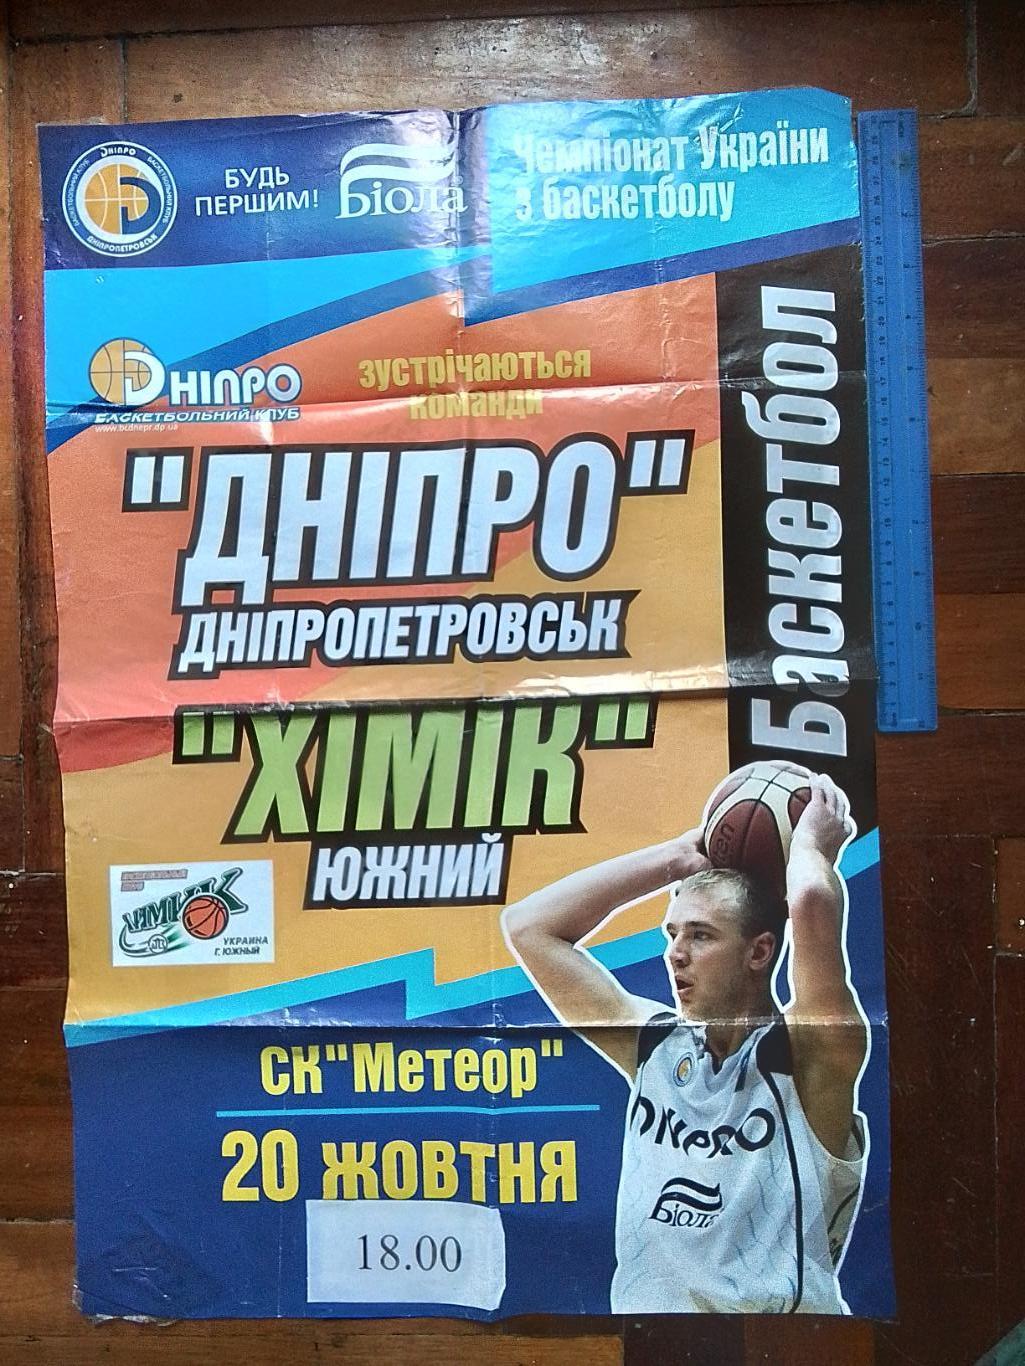 Афиша Баскетбол Днепр Днепропетровск - Химик Южный 20. 10. 2005